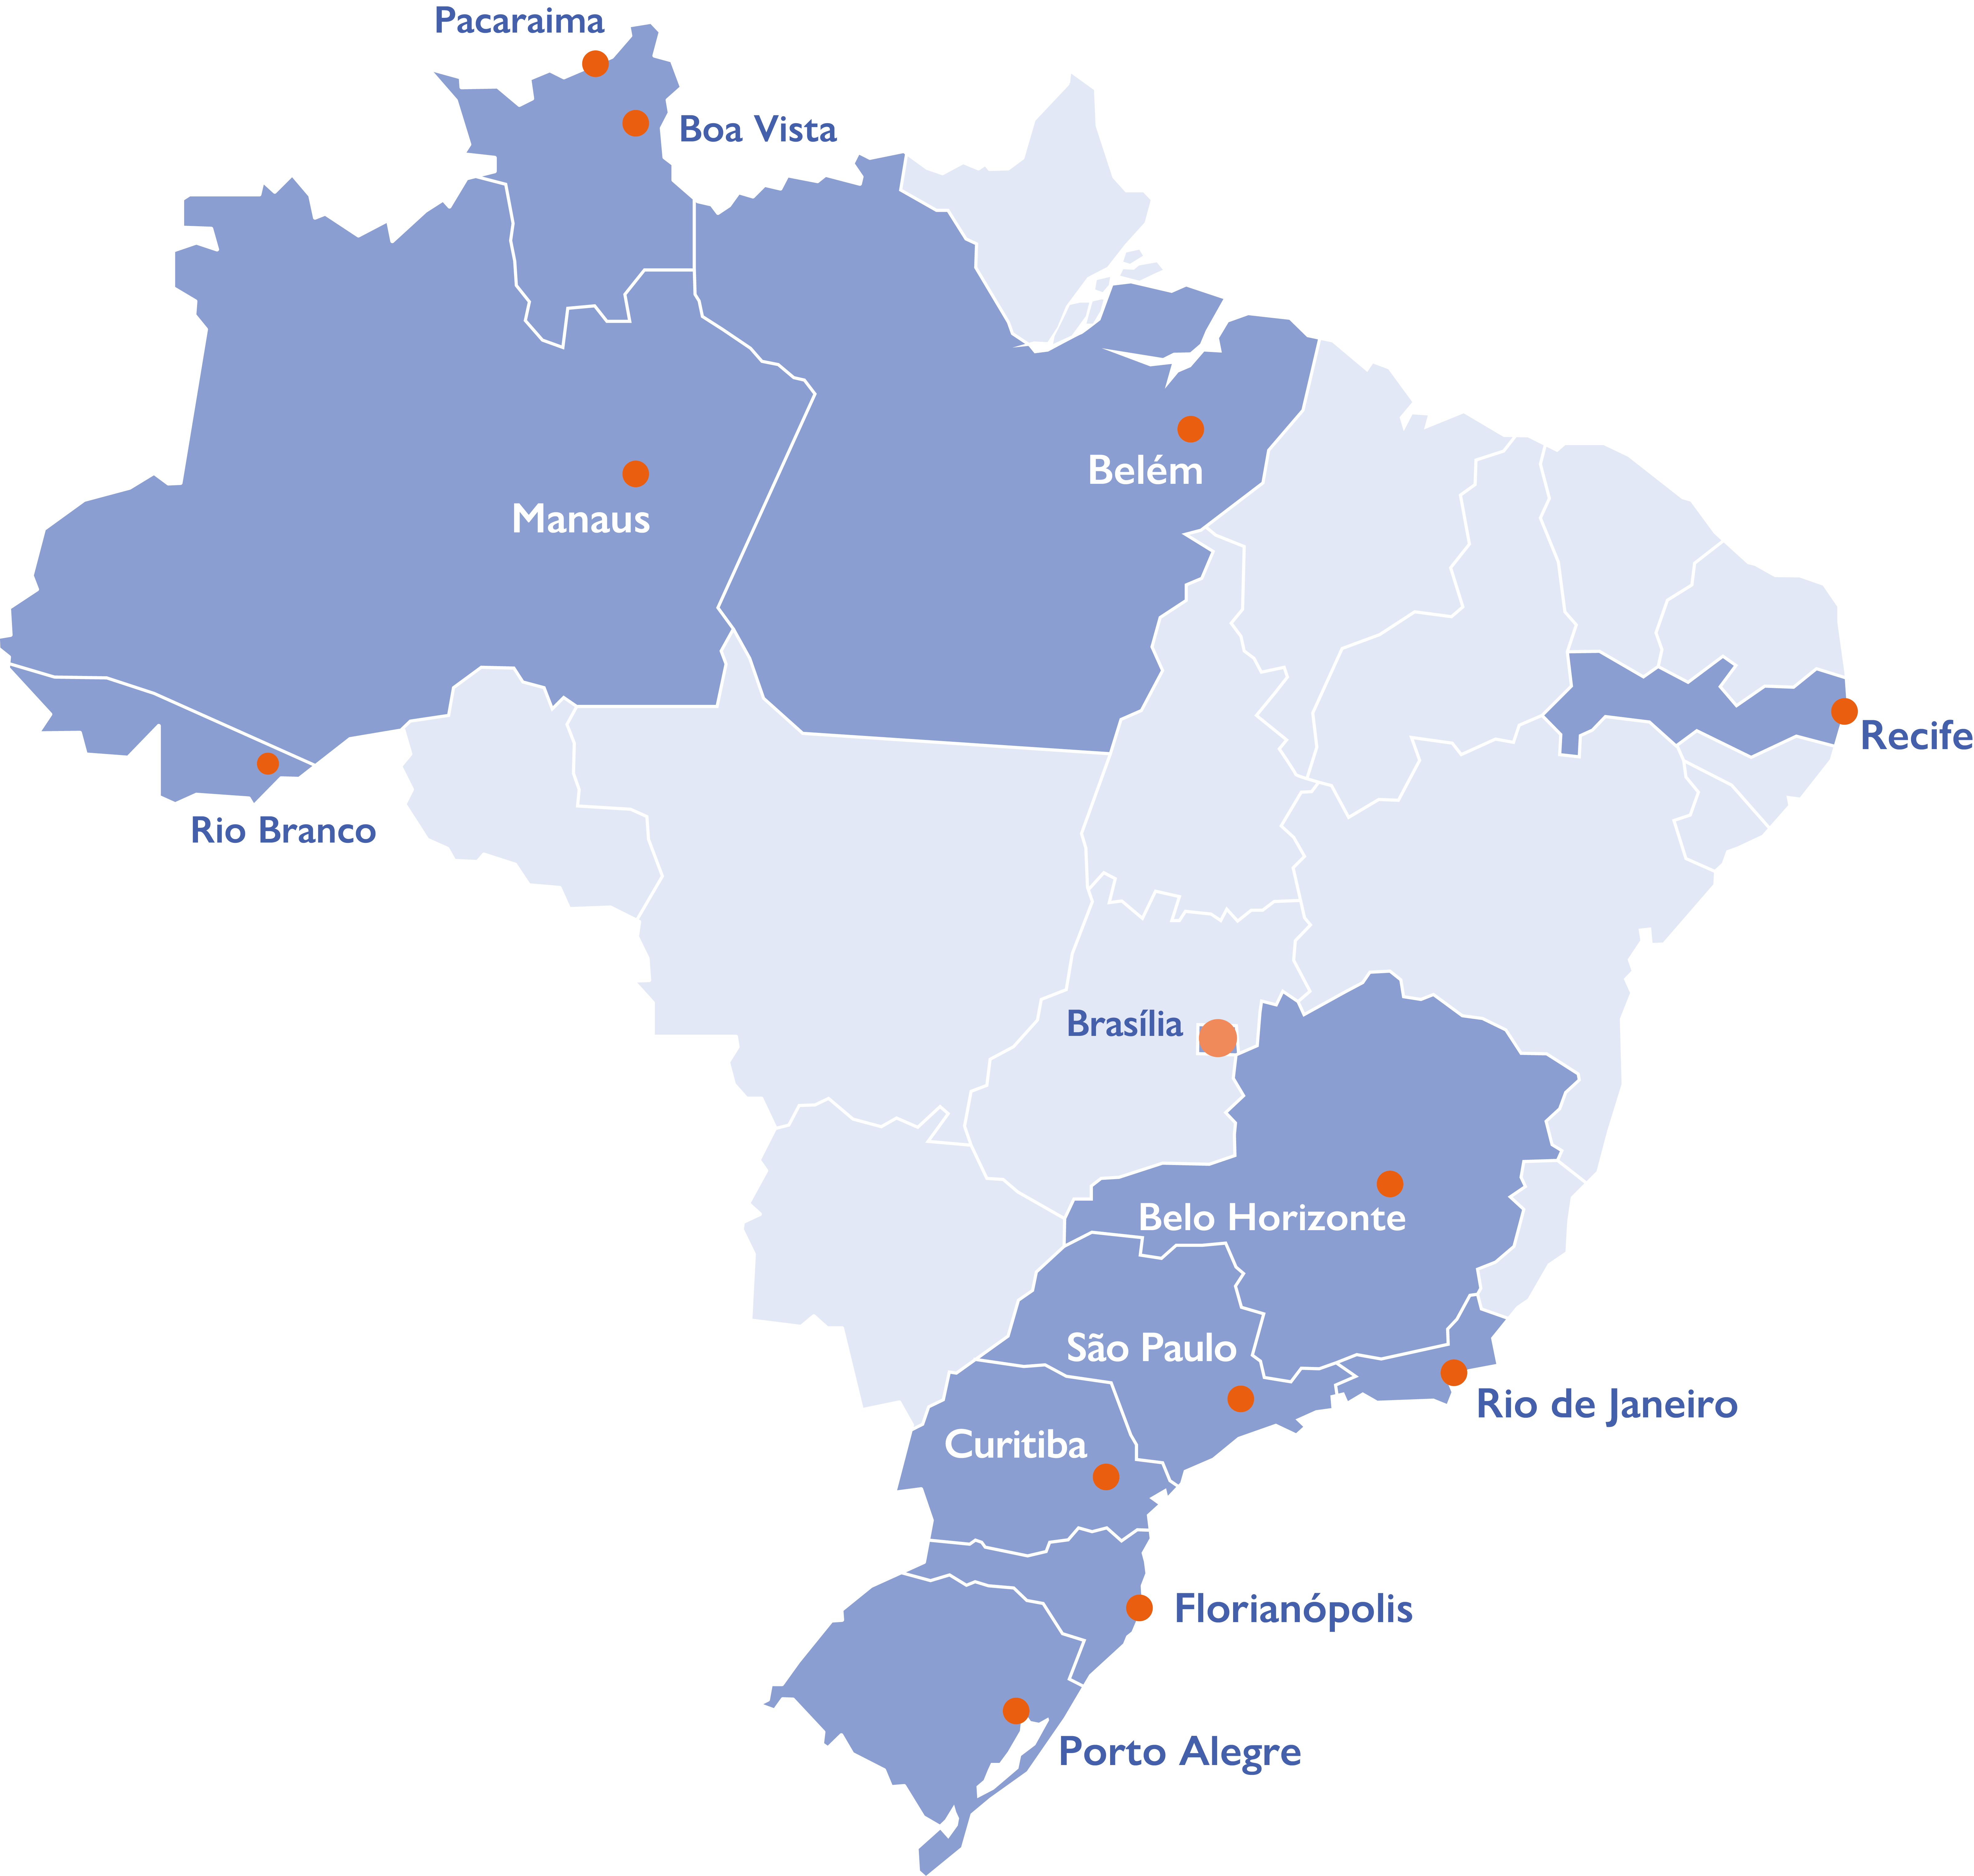 Mapa do Brasil com os estados e cidades onde a OIM possui escritórios em destaque